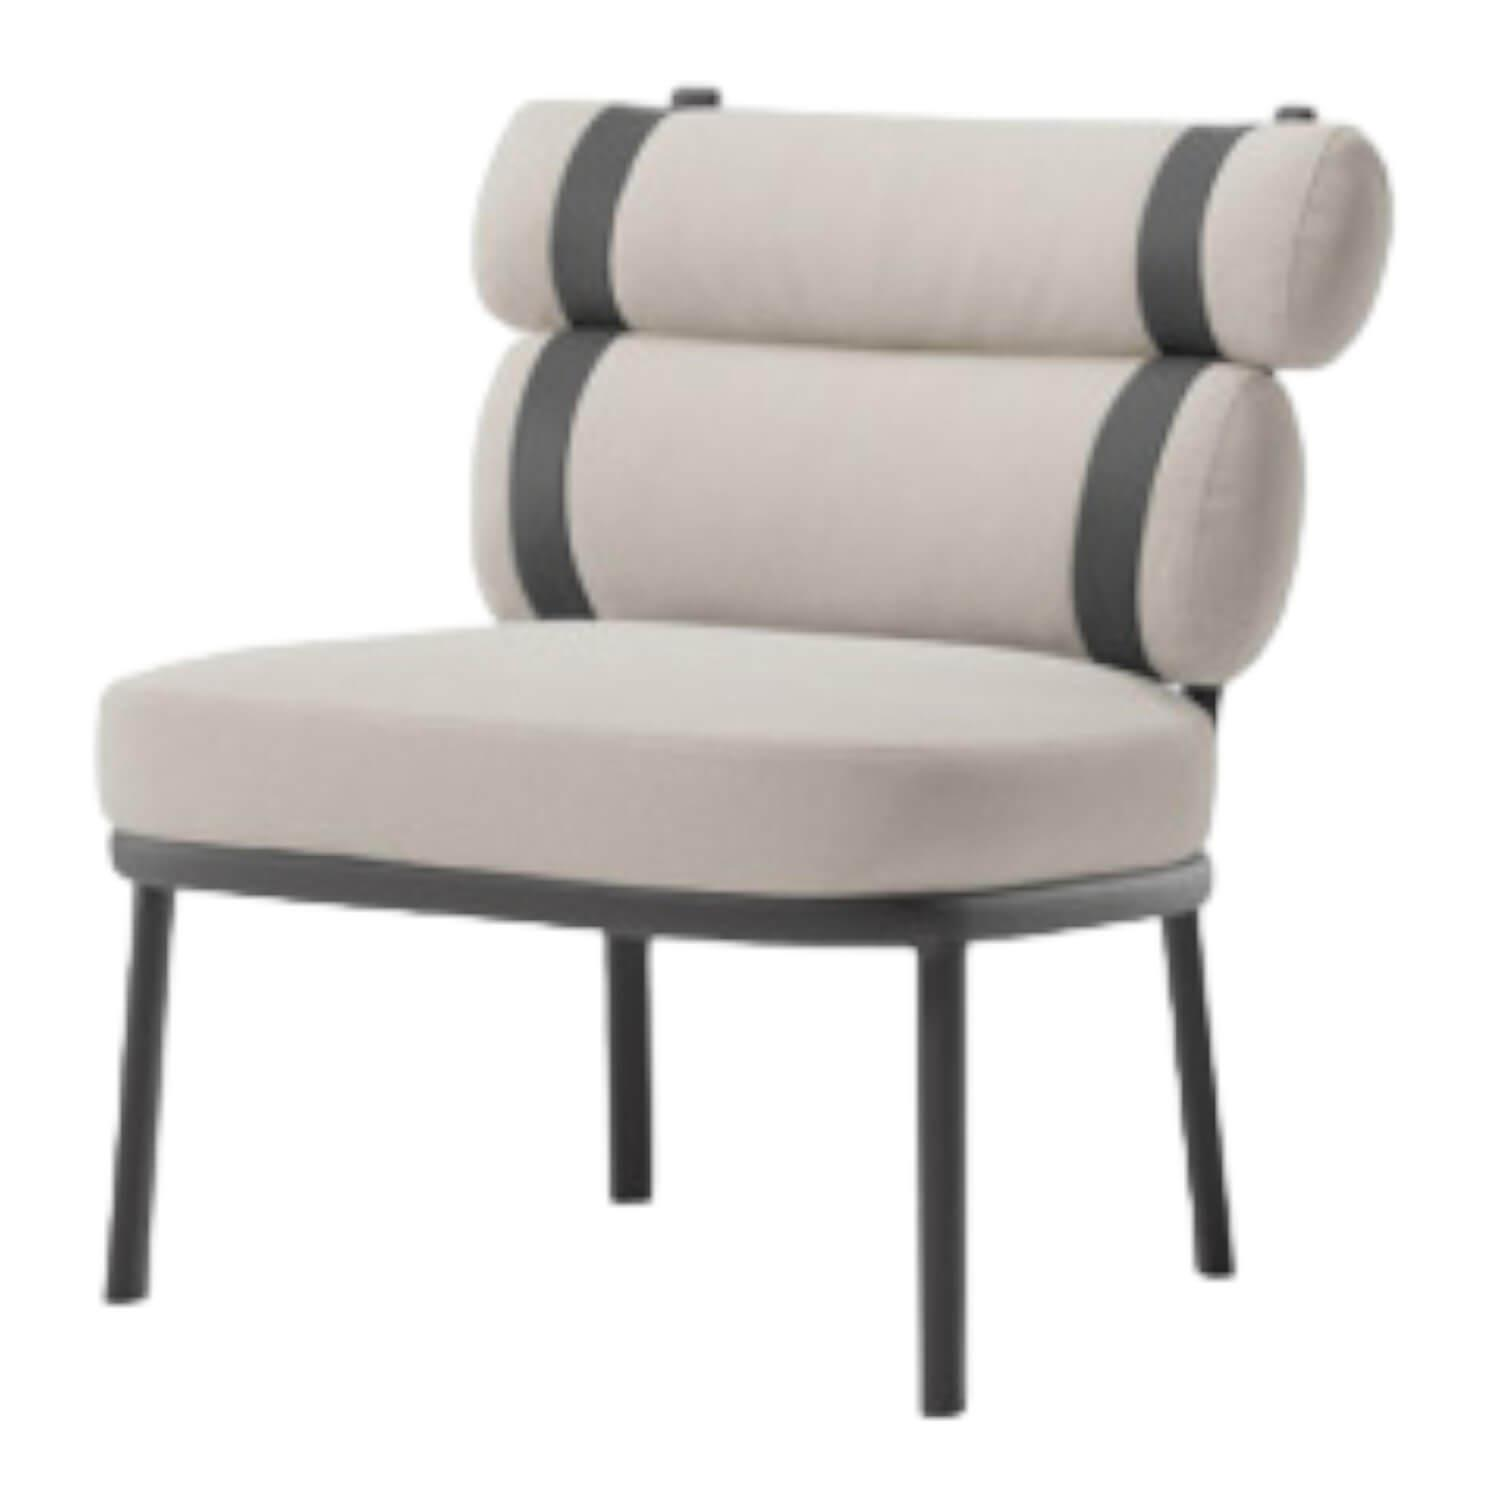 Outdoor-Sessel Roll Stoff Laminiert Farbe Fog Gestell Aluminium